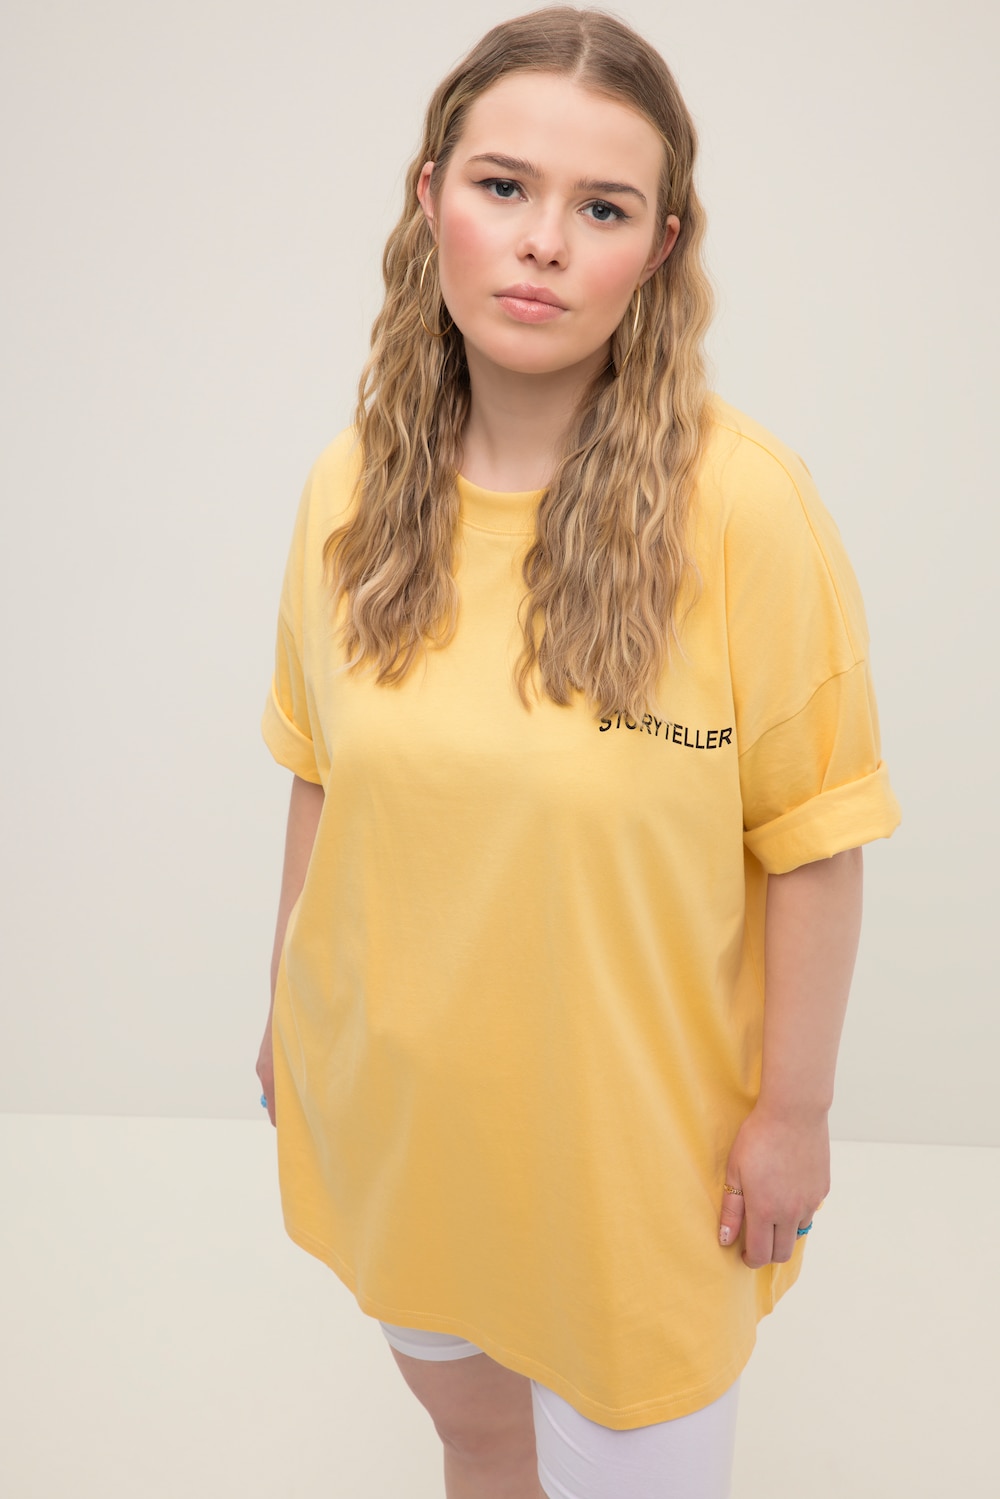 Grote Maten T-shirt, Dames, geel, Maat: 42/44, Katoen, Studio Untold